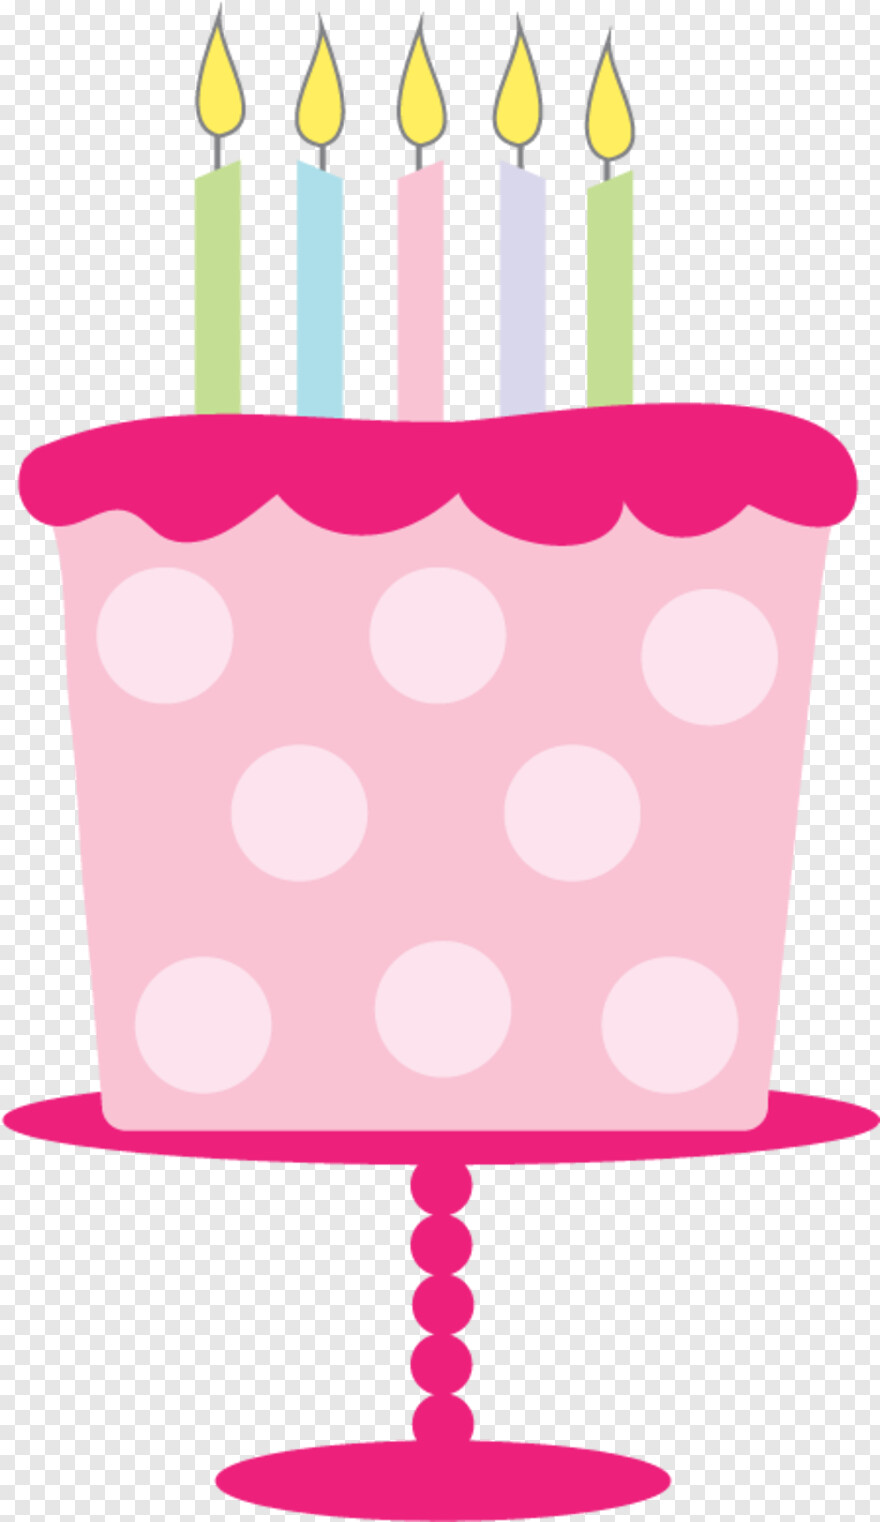 happy-birthday-cake-images # 541648